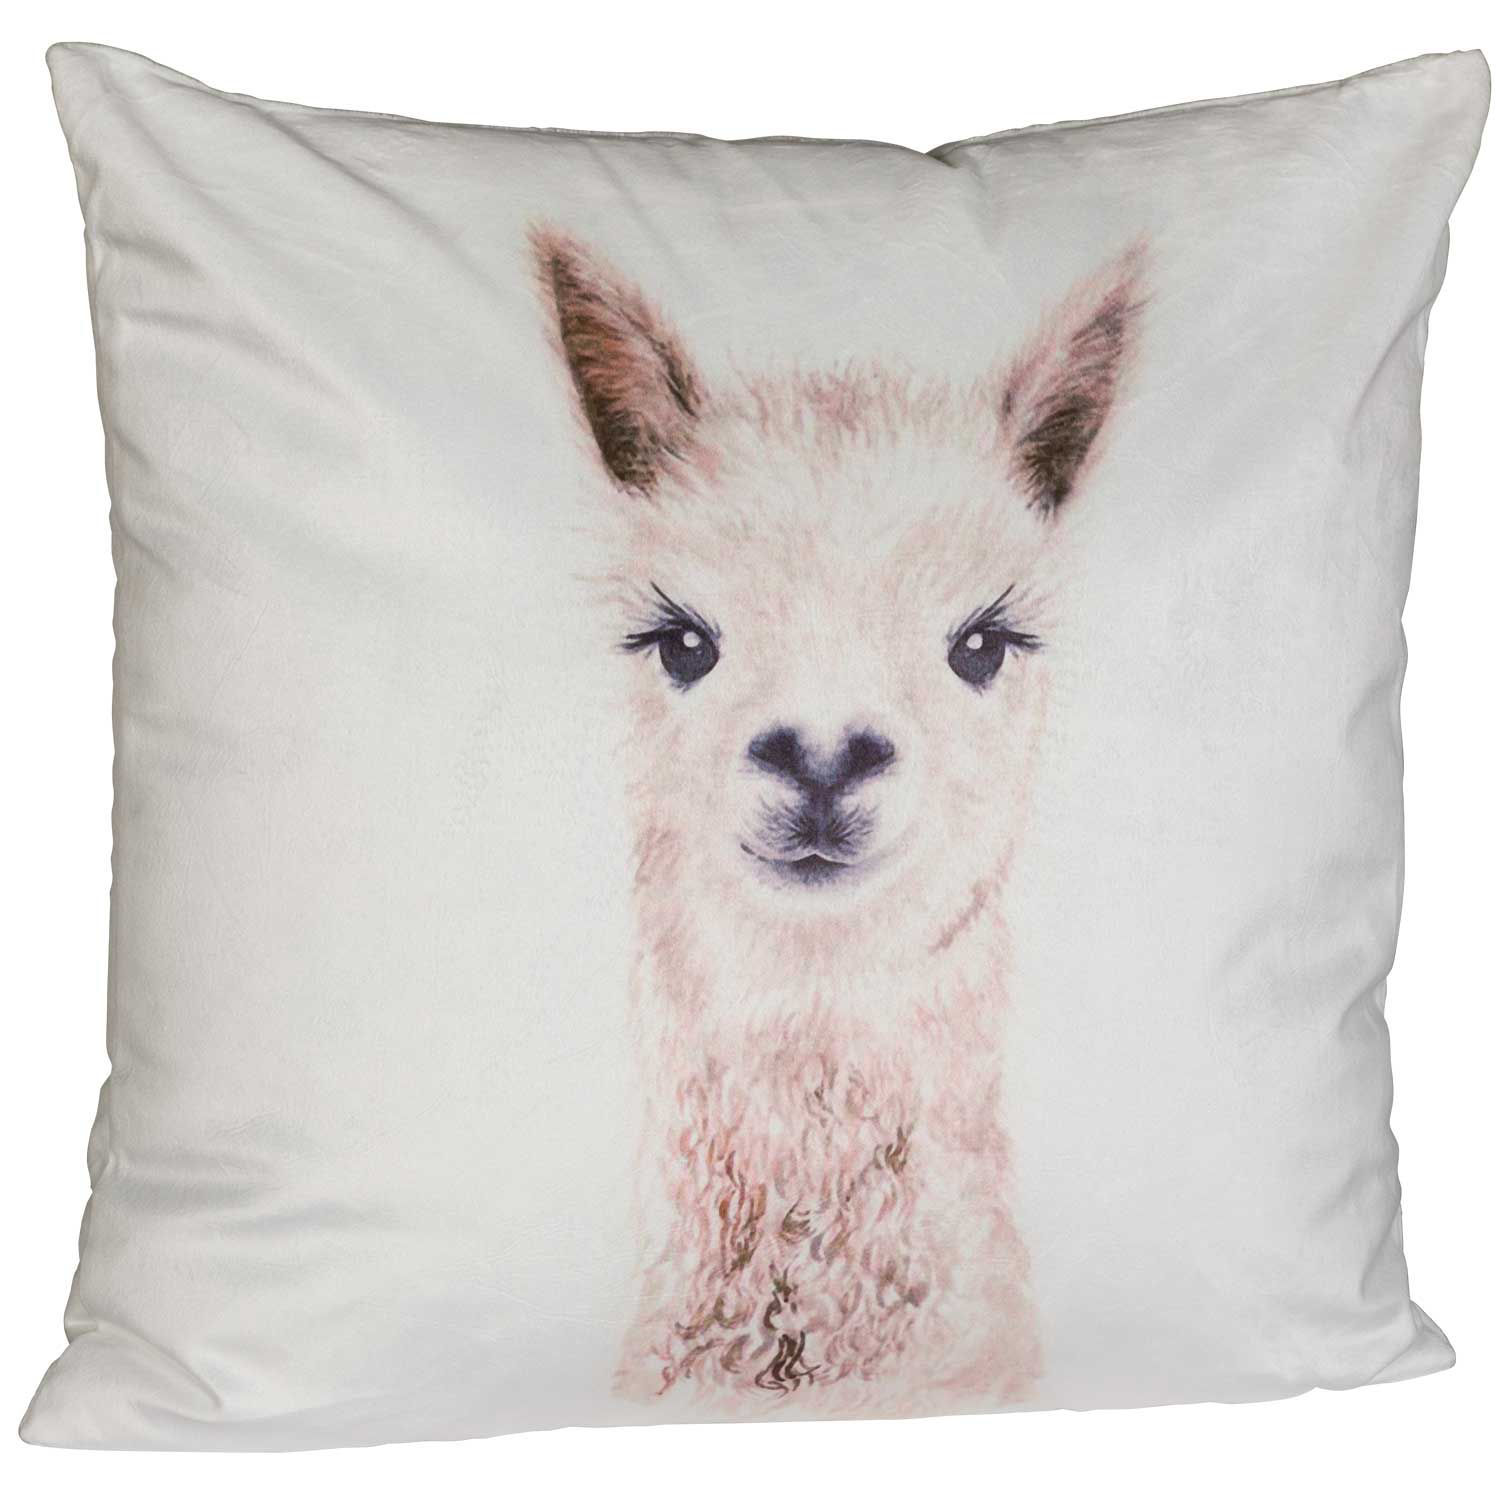 https://images.afw.com/images/thumbs/0120305_llama-llama-18x18-inch-pillow.jpeg